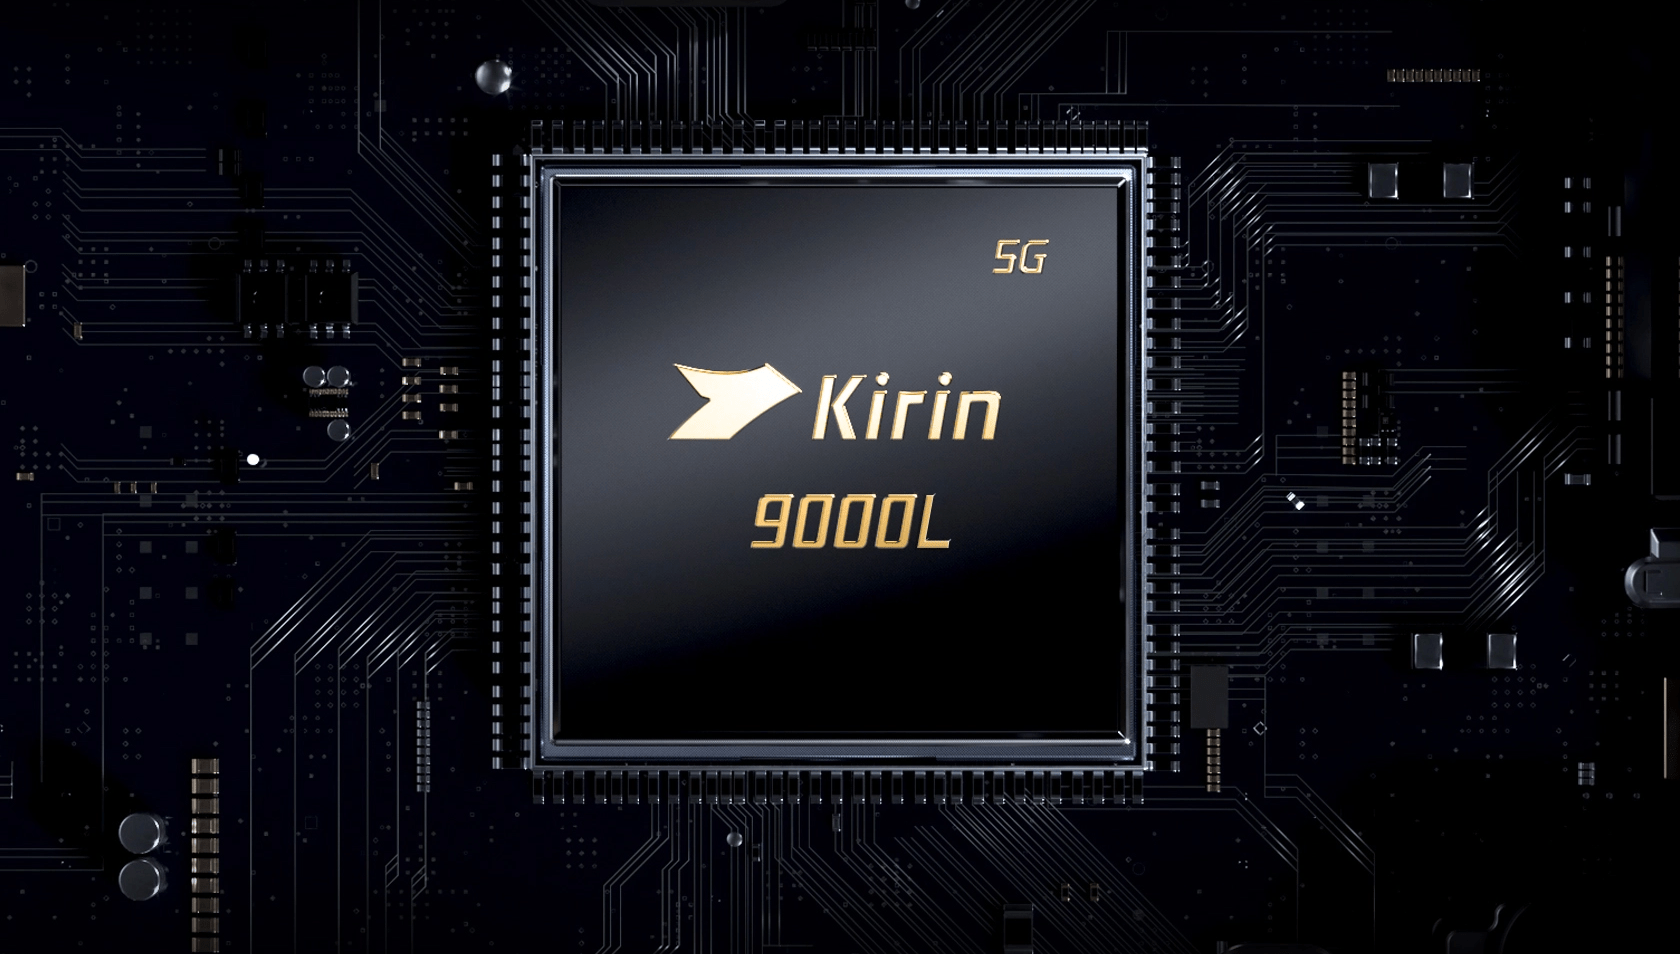 Kirin 9000Lを発表、ヘキサコア構成のCPUを採用した異質な製品